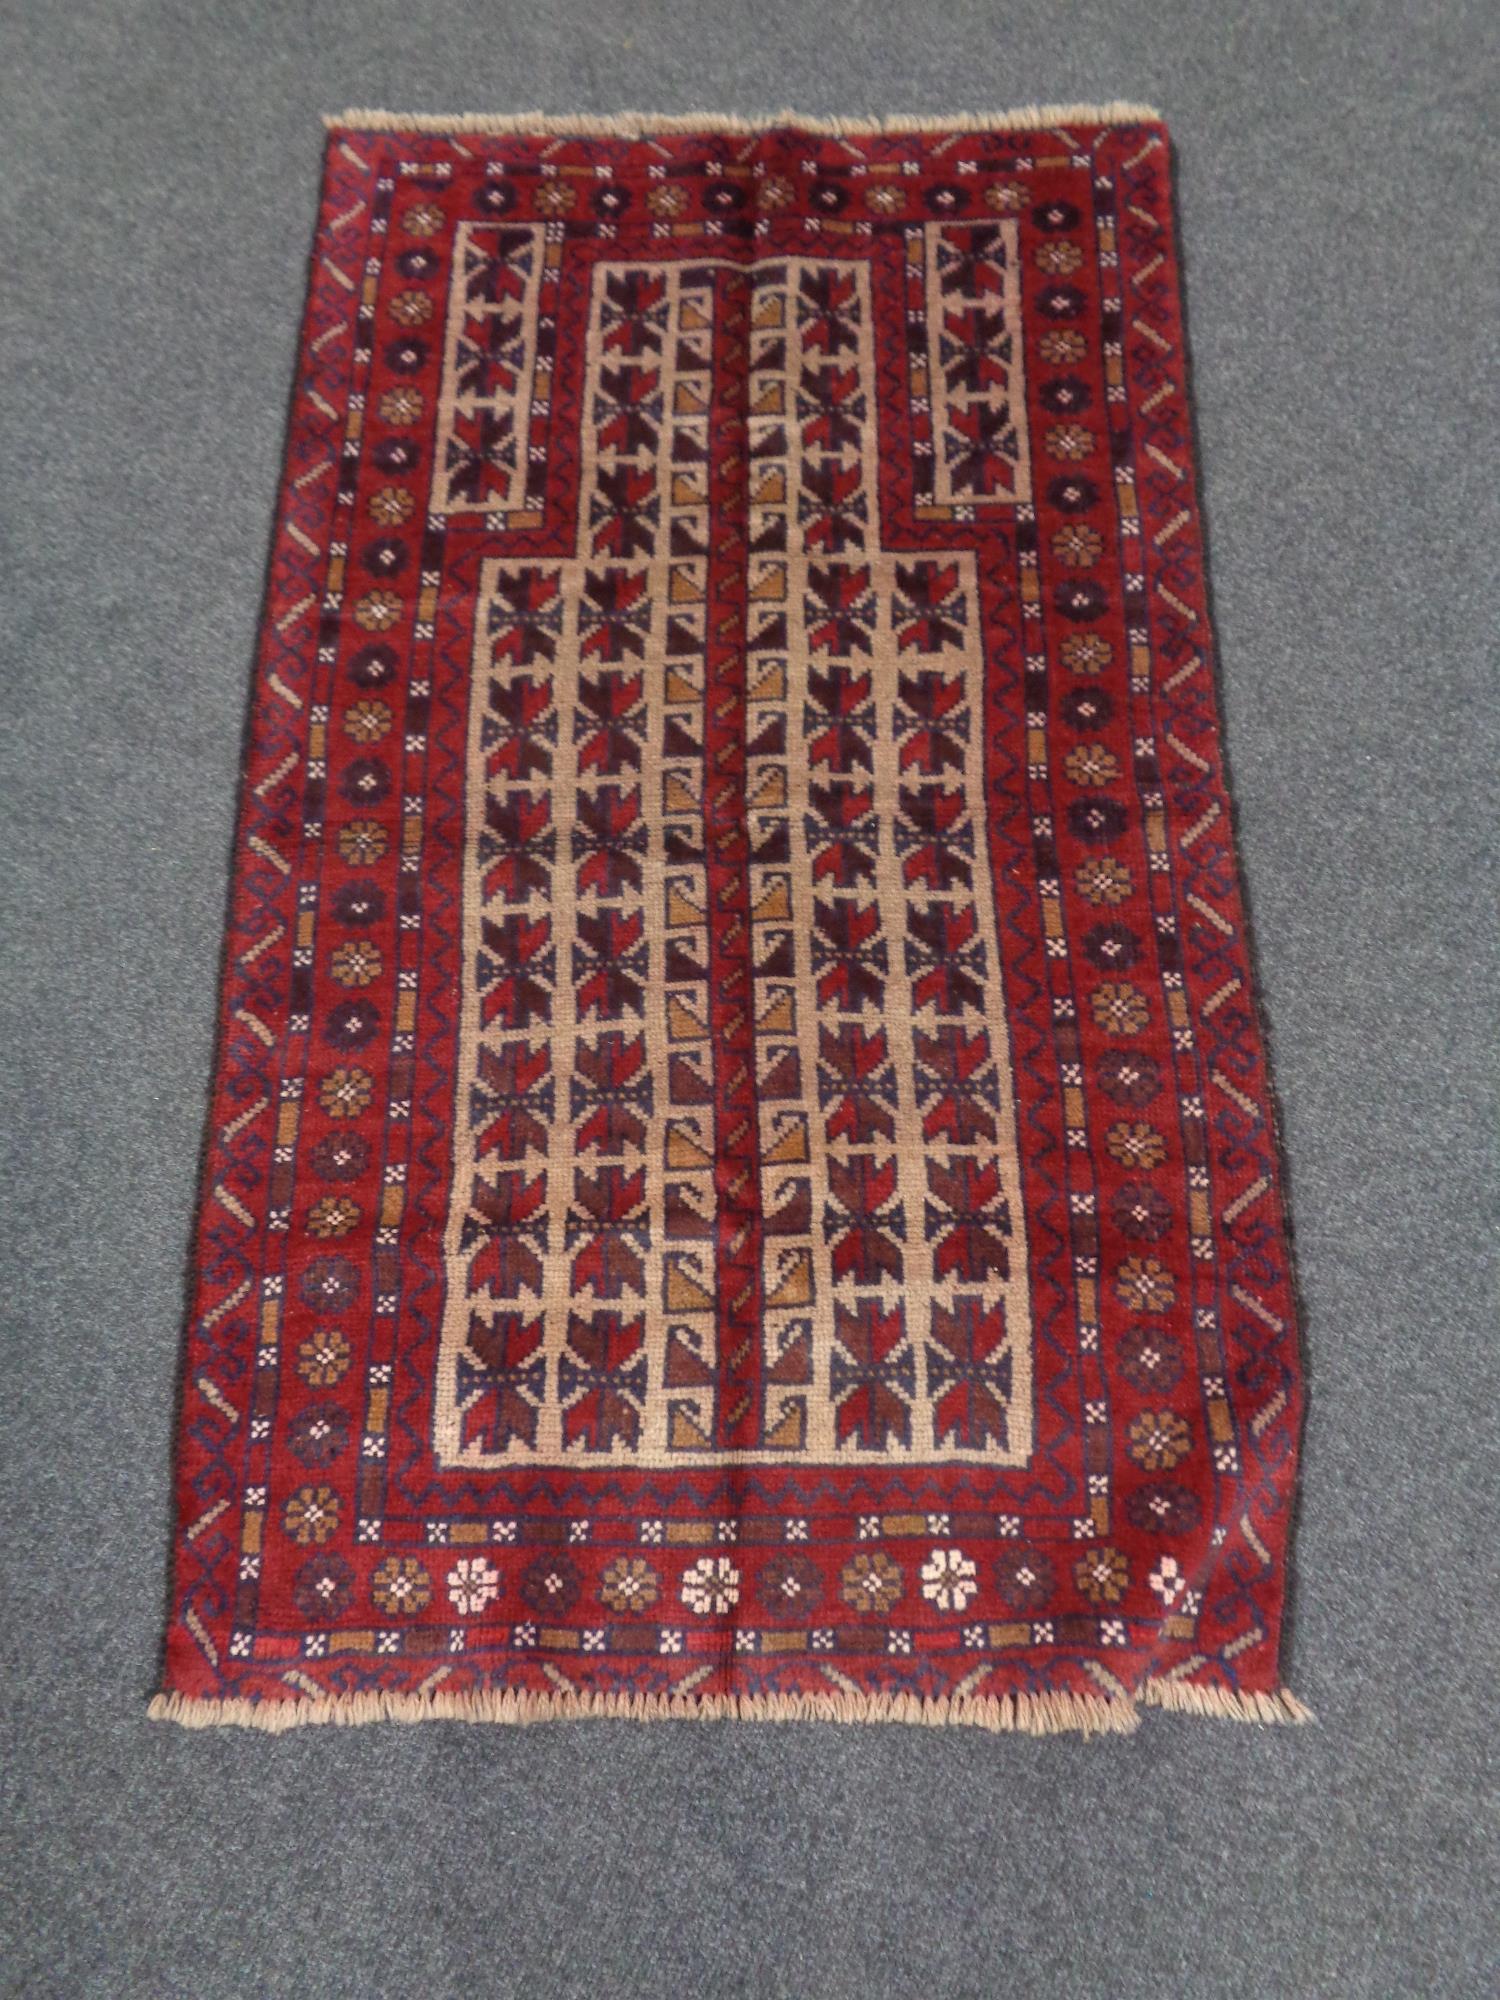 A Baluchi rug 129cm by 76cm